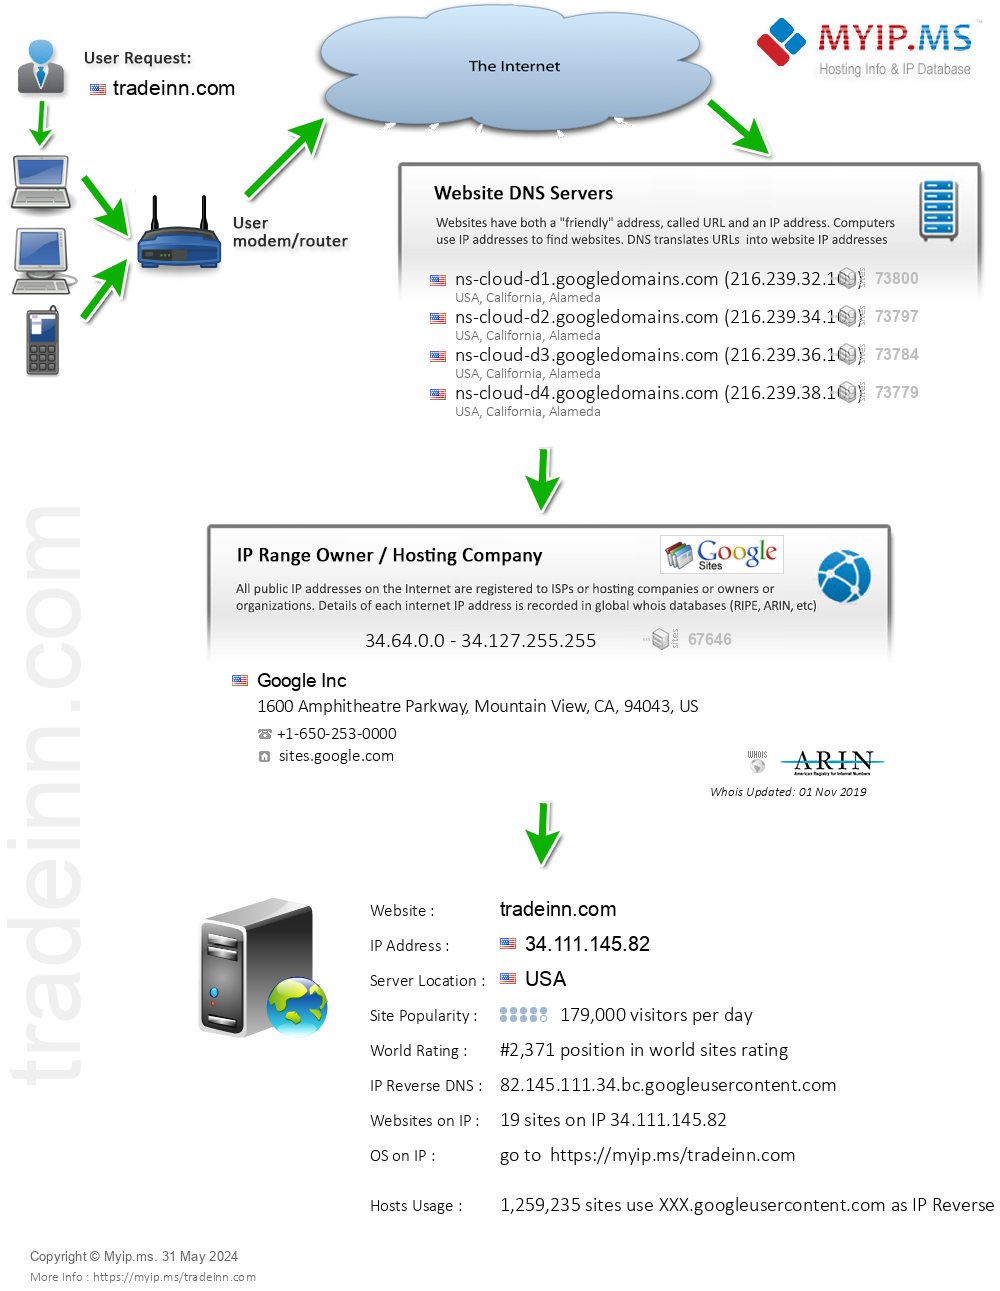 Tradeinn.com - Website Hosting Visual IP Diagram